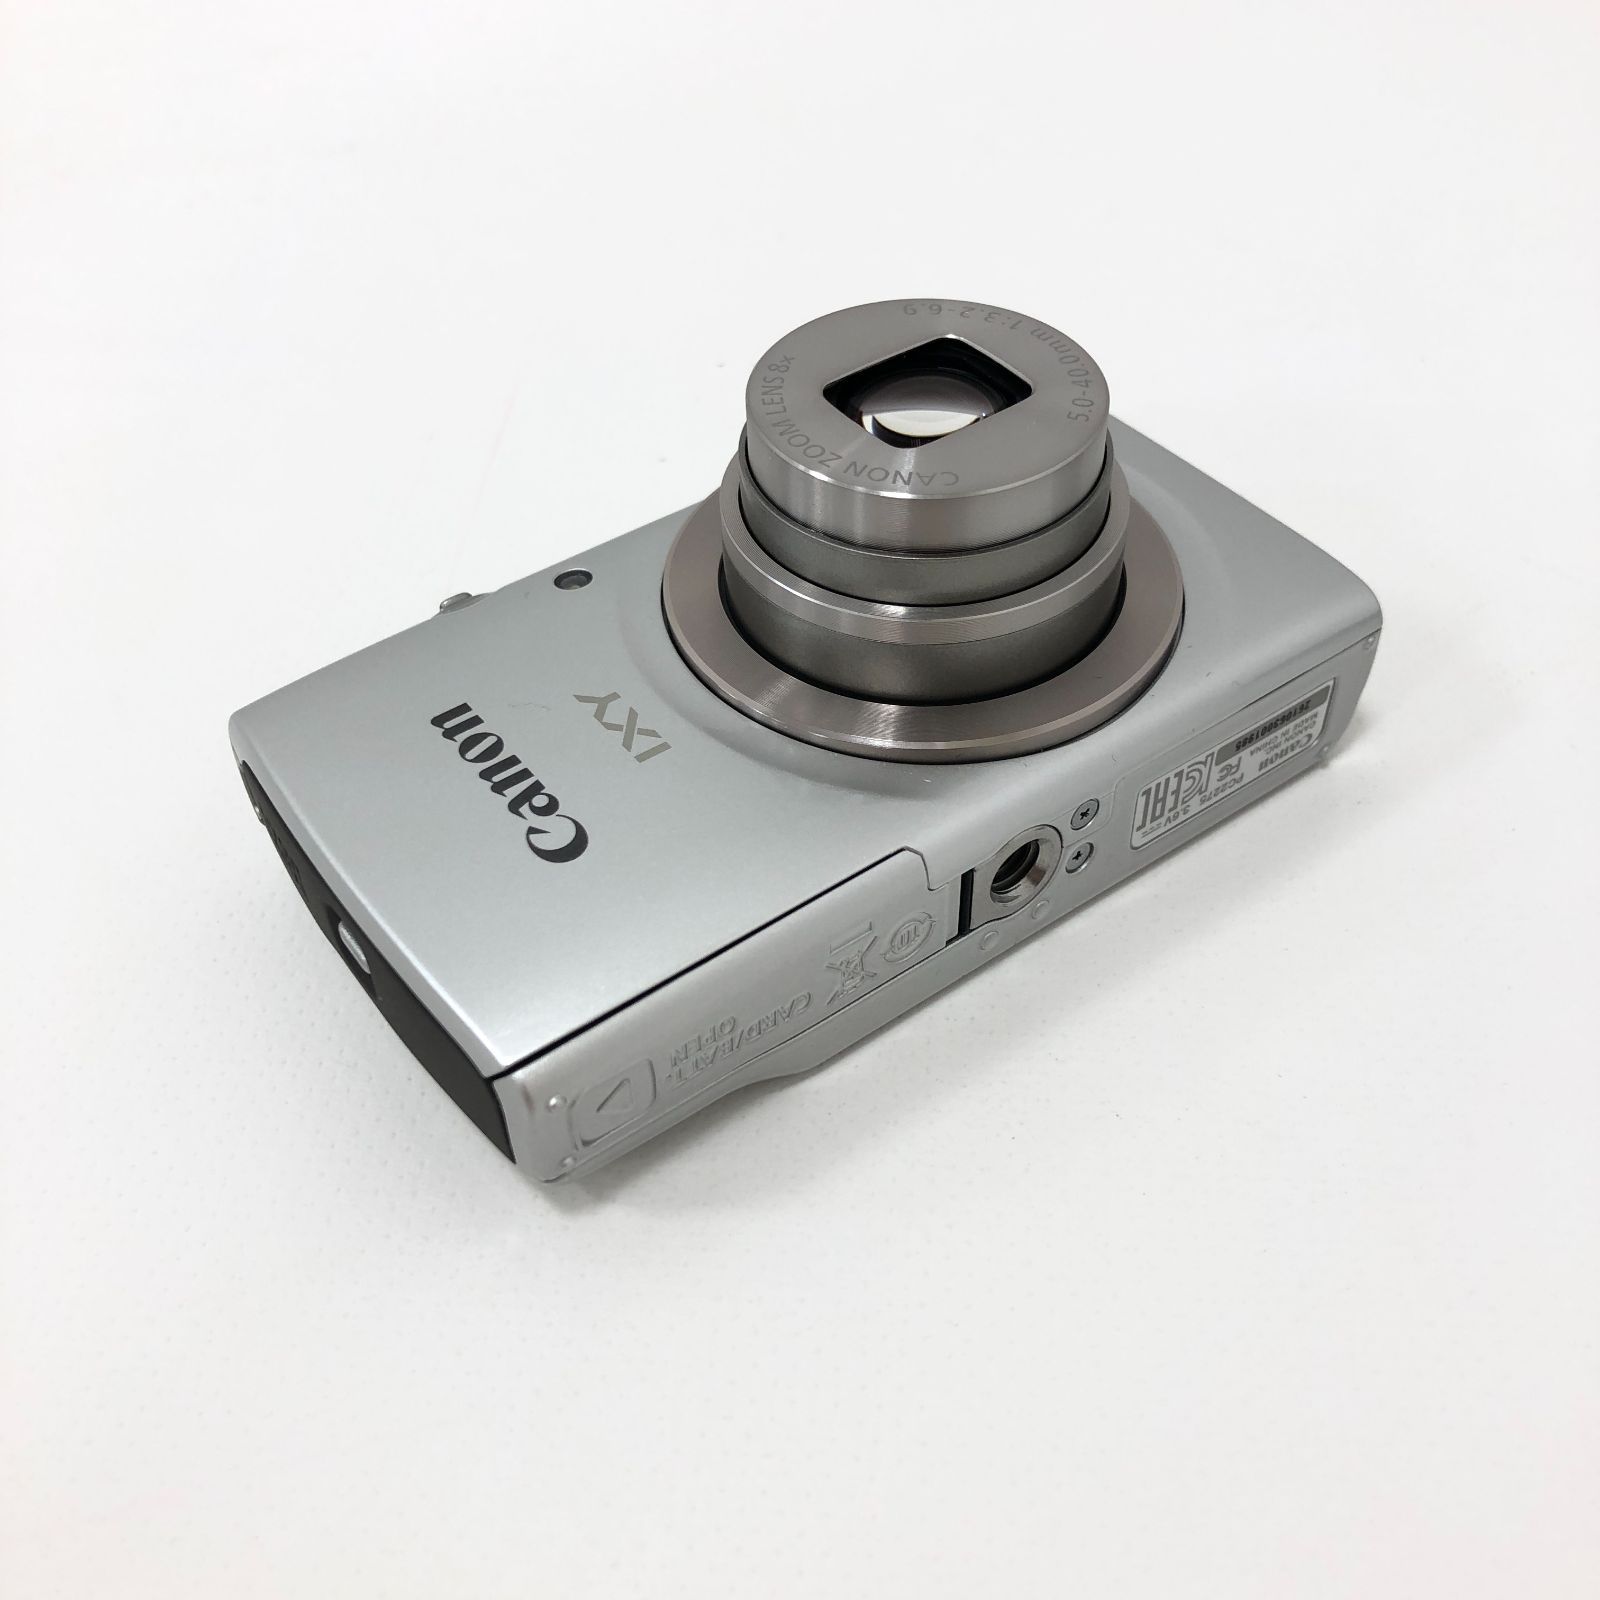 キヤノン 動作確認済 Canon IXY180 コンパクトデジタルカメラ シルバー